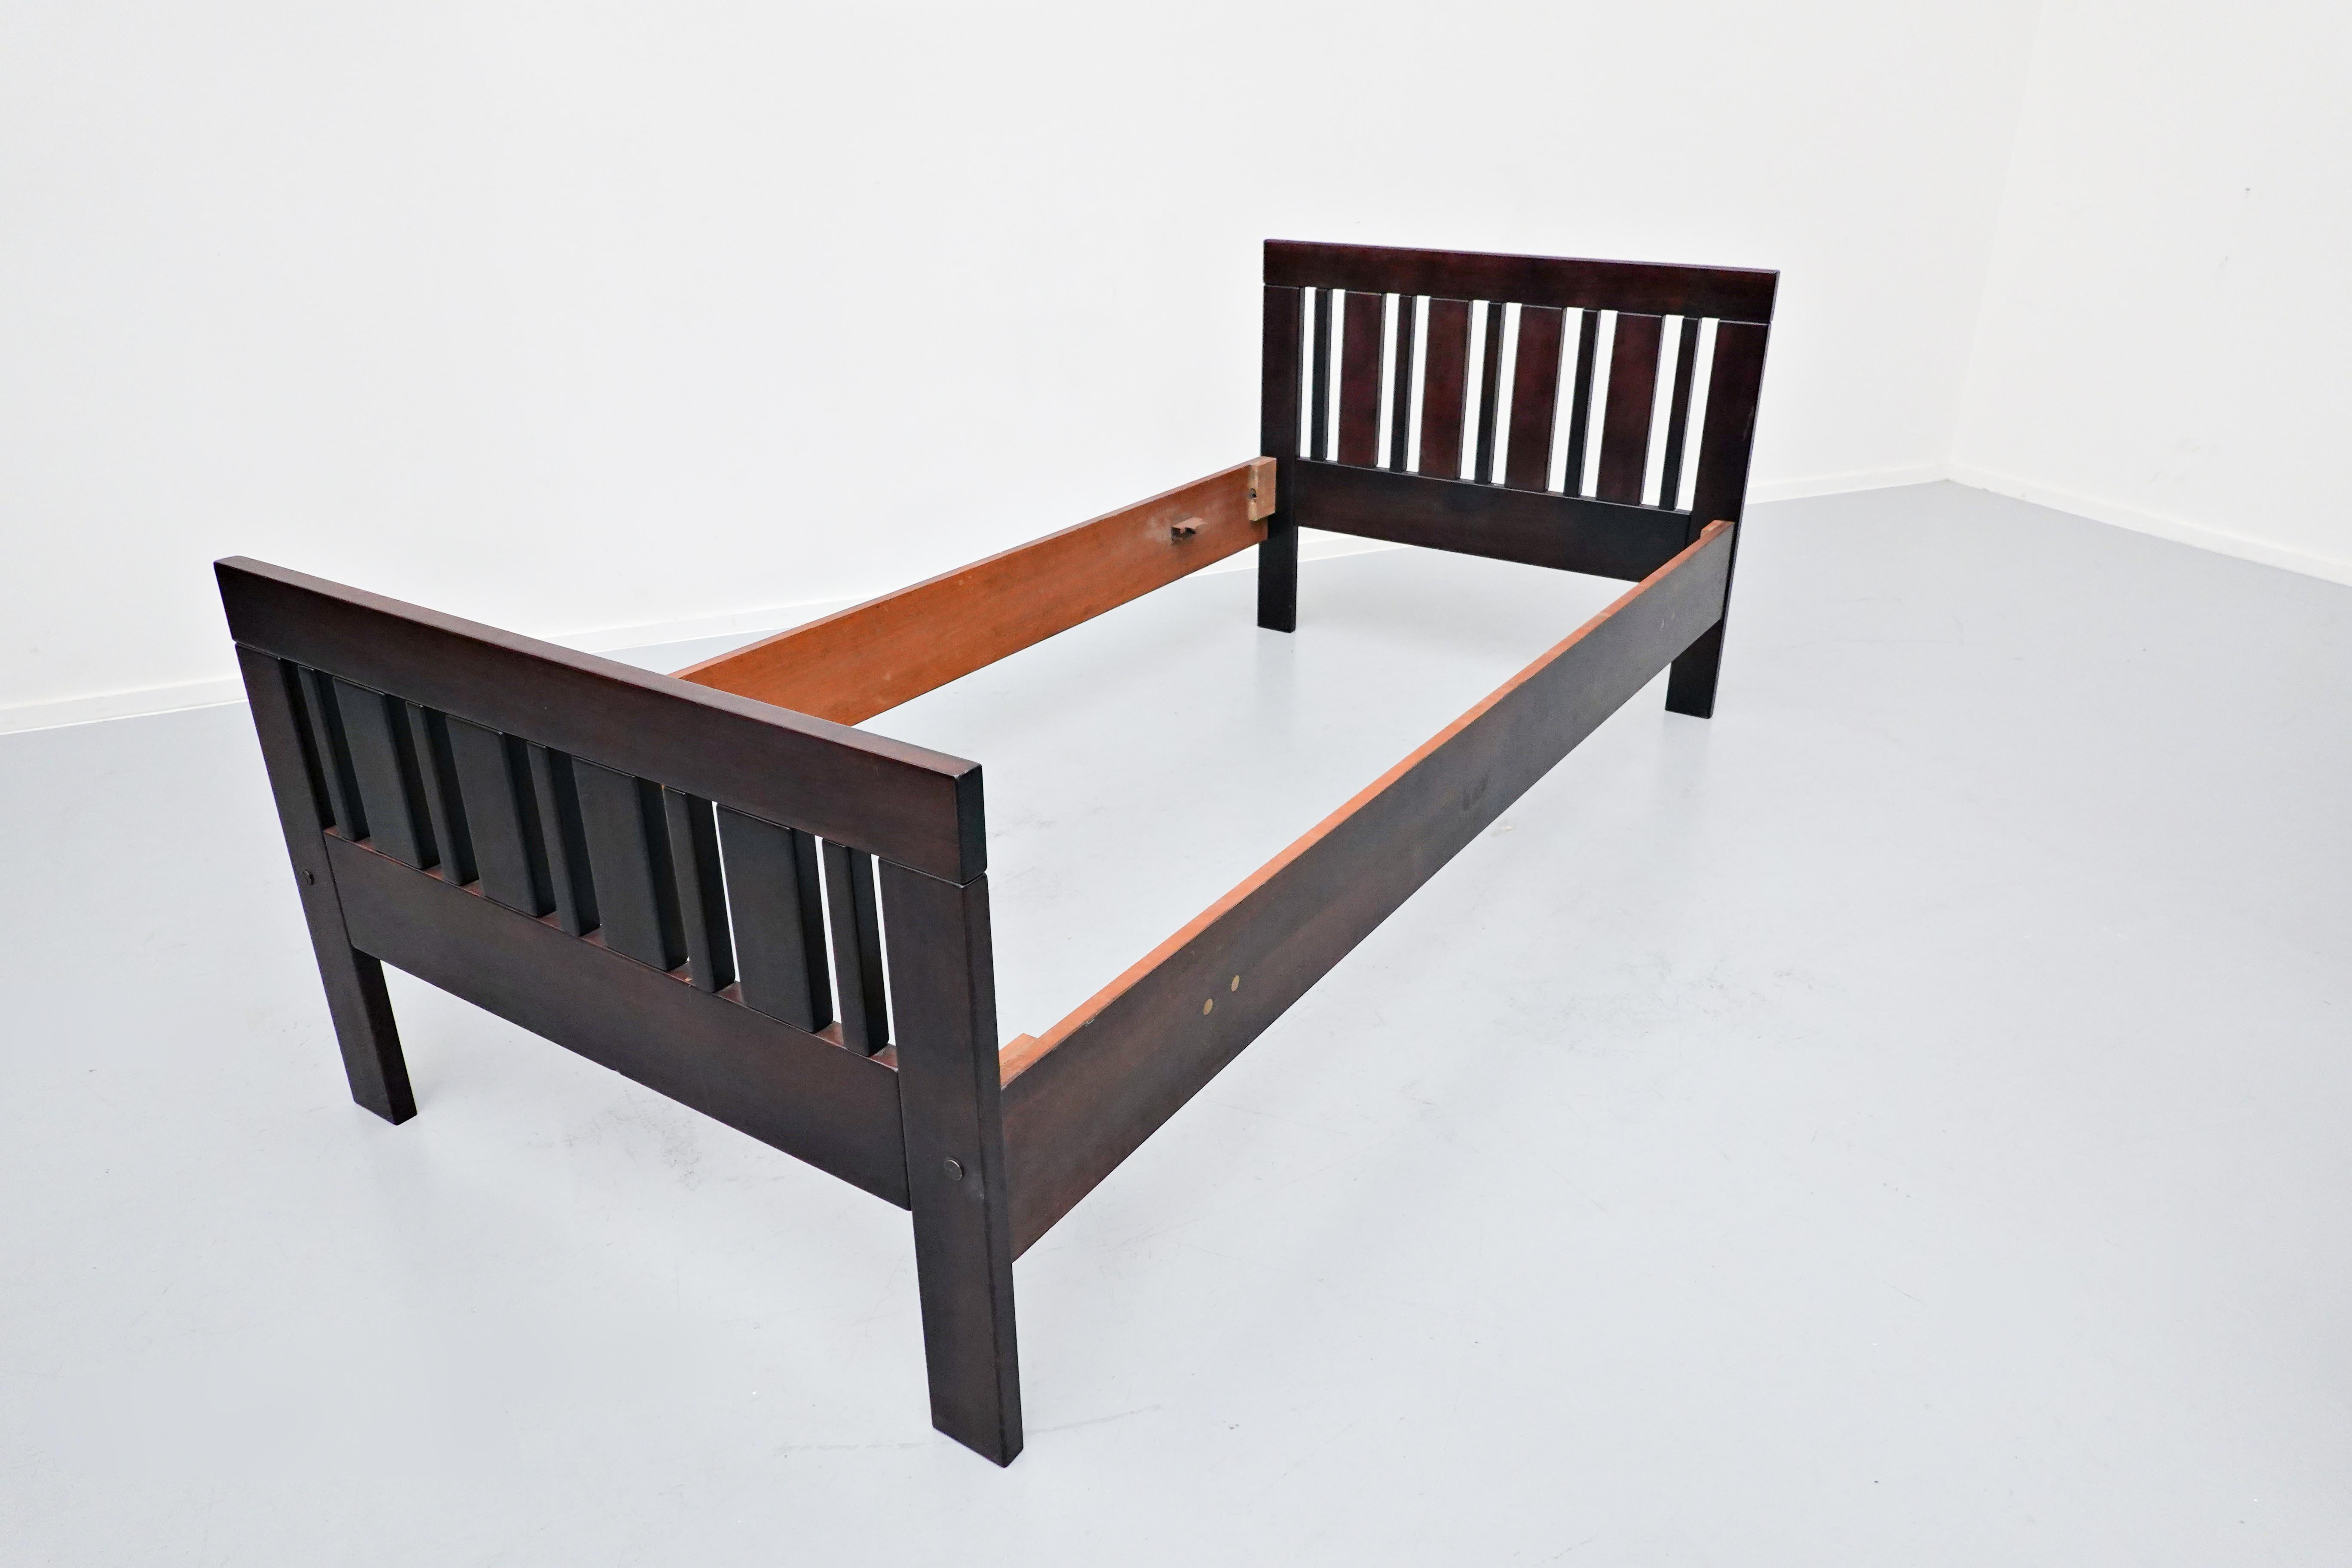 sanyang bed frame